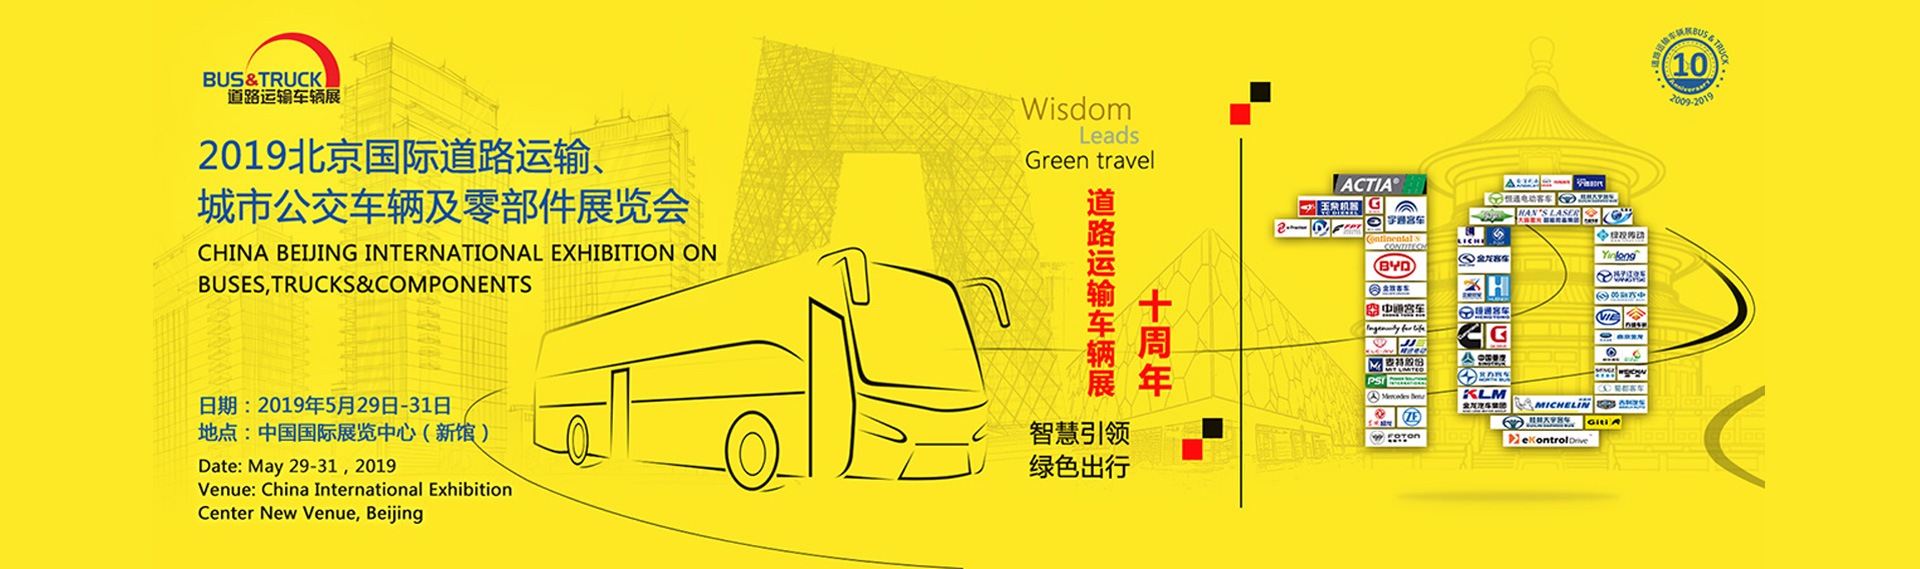 申龙客车展台 2019北京国际道路运输、城市公交车辆及零配件展览会